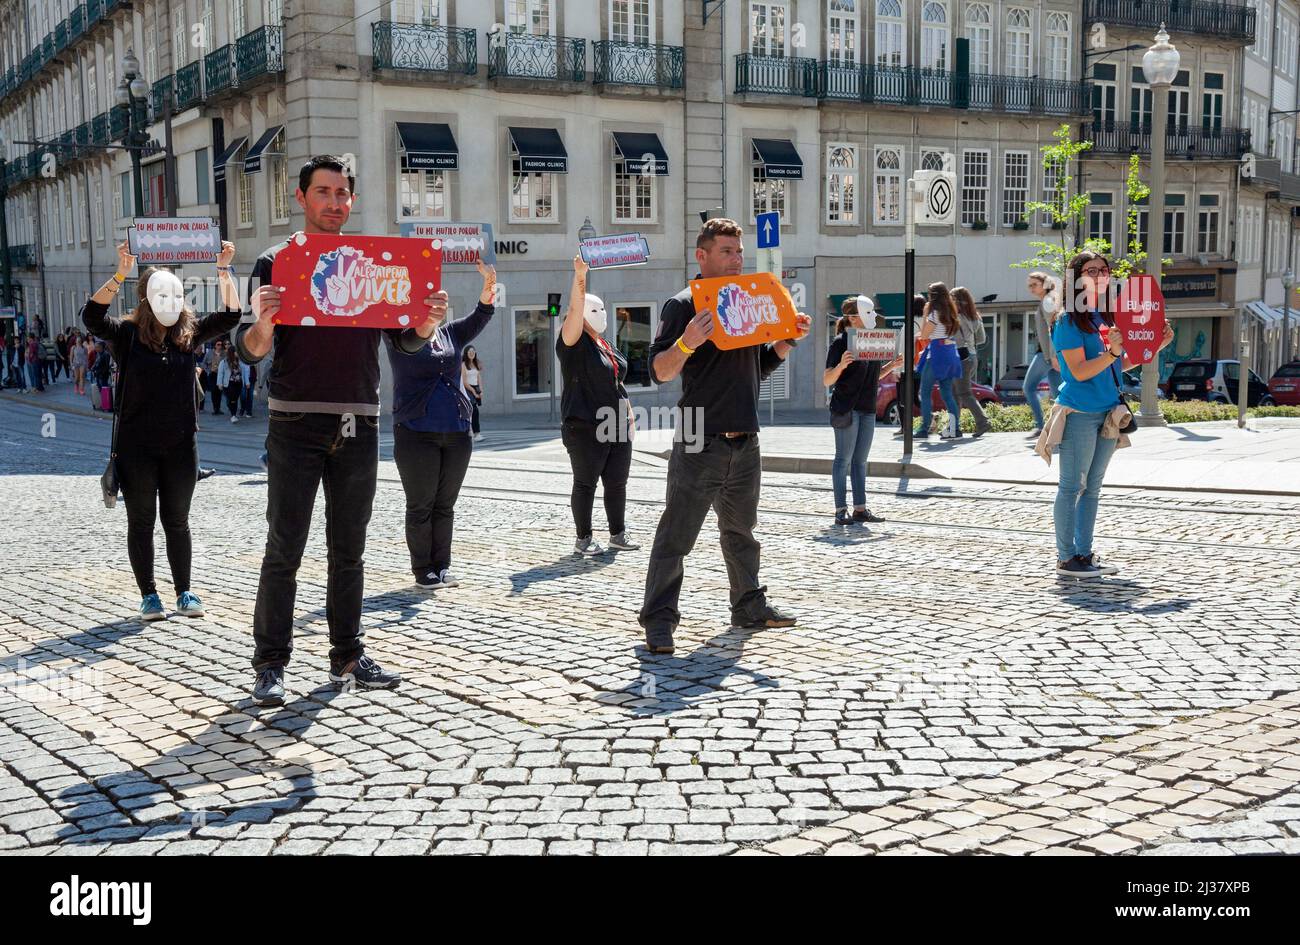 Europe, Portugal, Porto, Praca da Liberdade, démonstration par des personnes sensibilisant aux questions de santé mentale sur les piétons Crossing. Banque D'Images